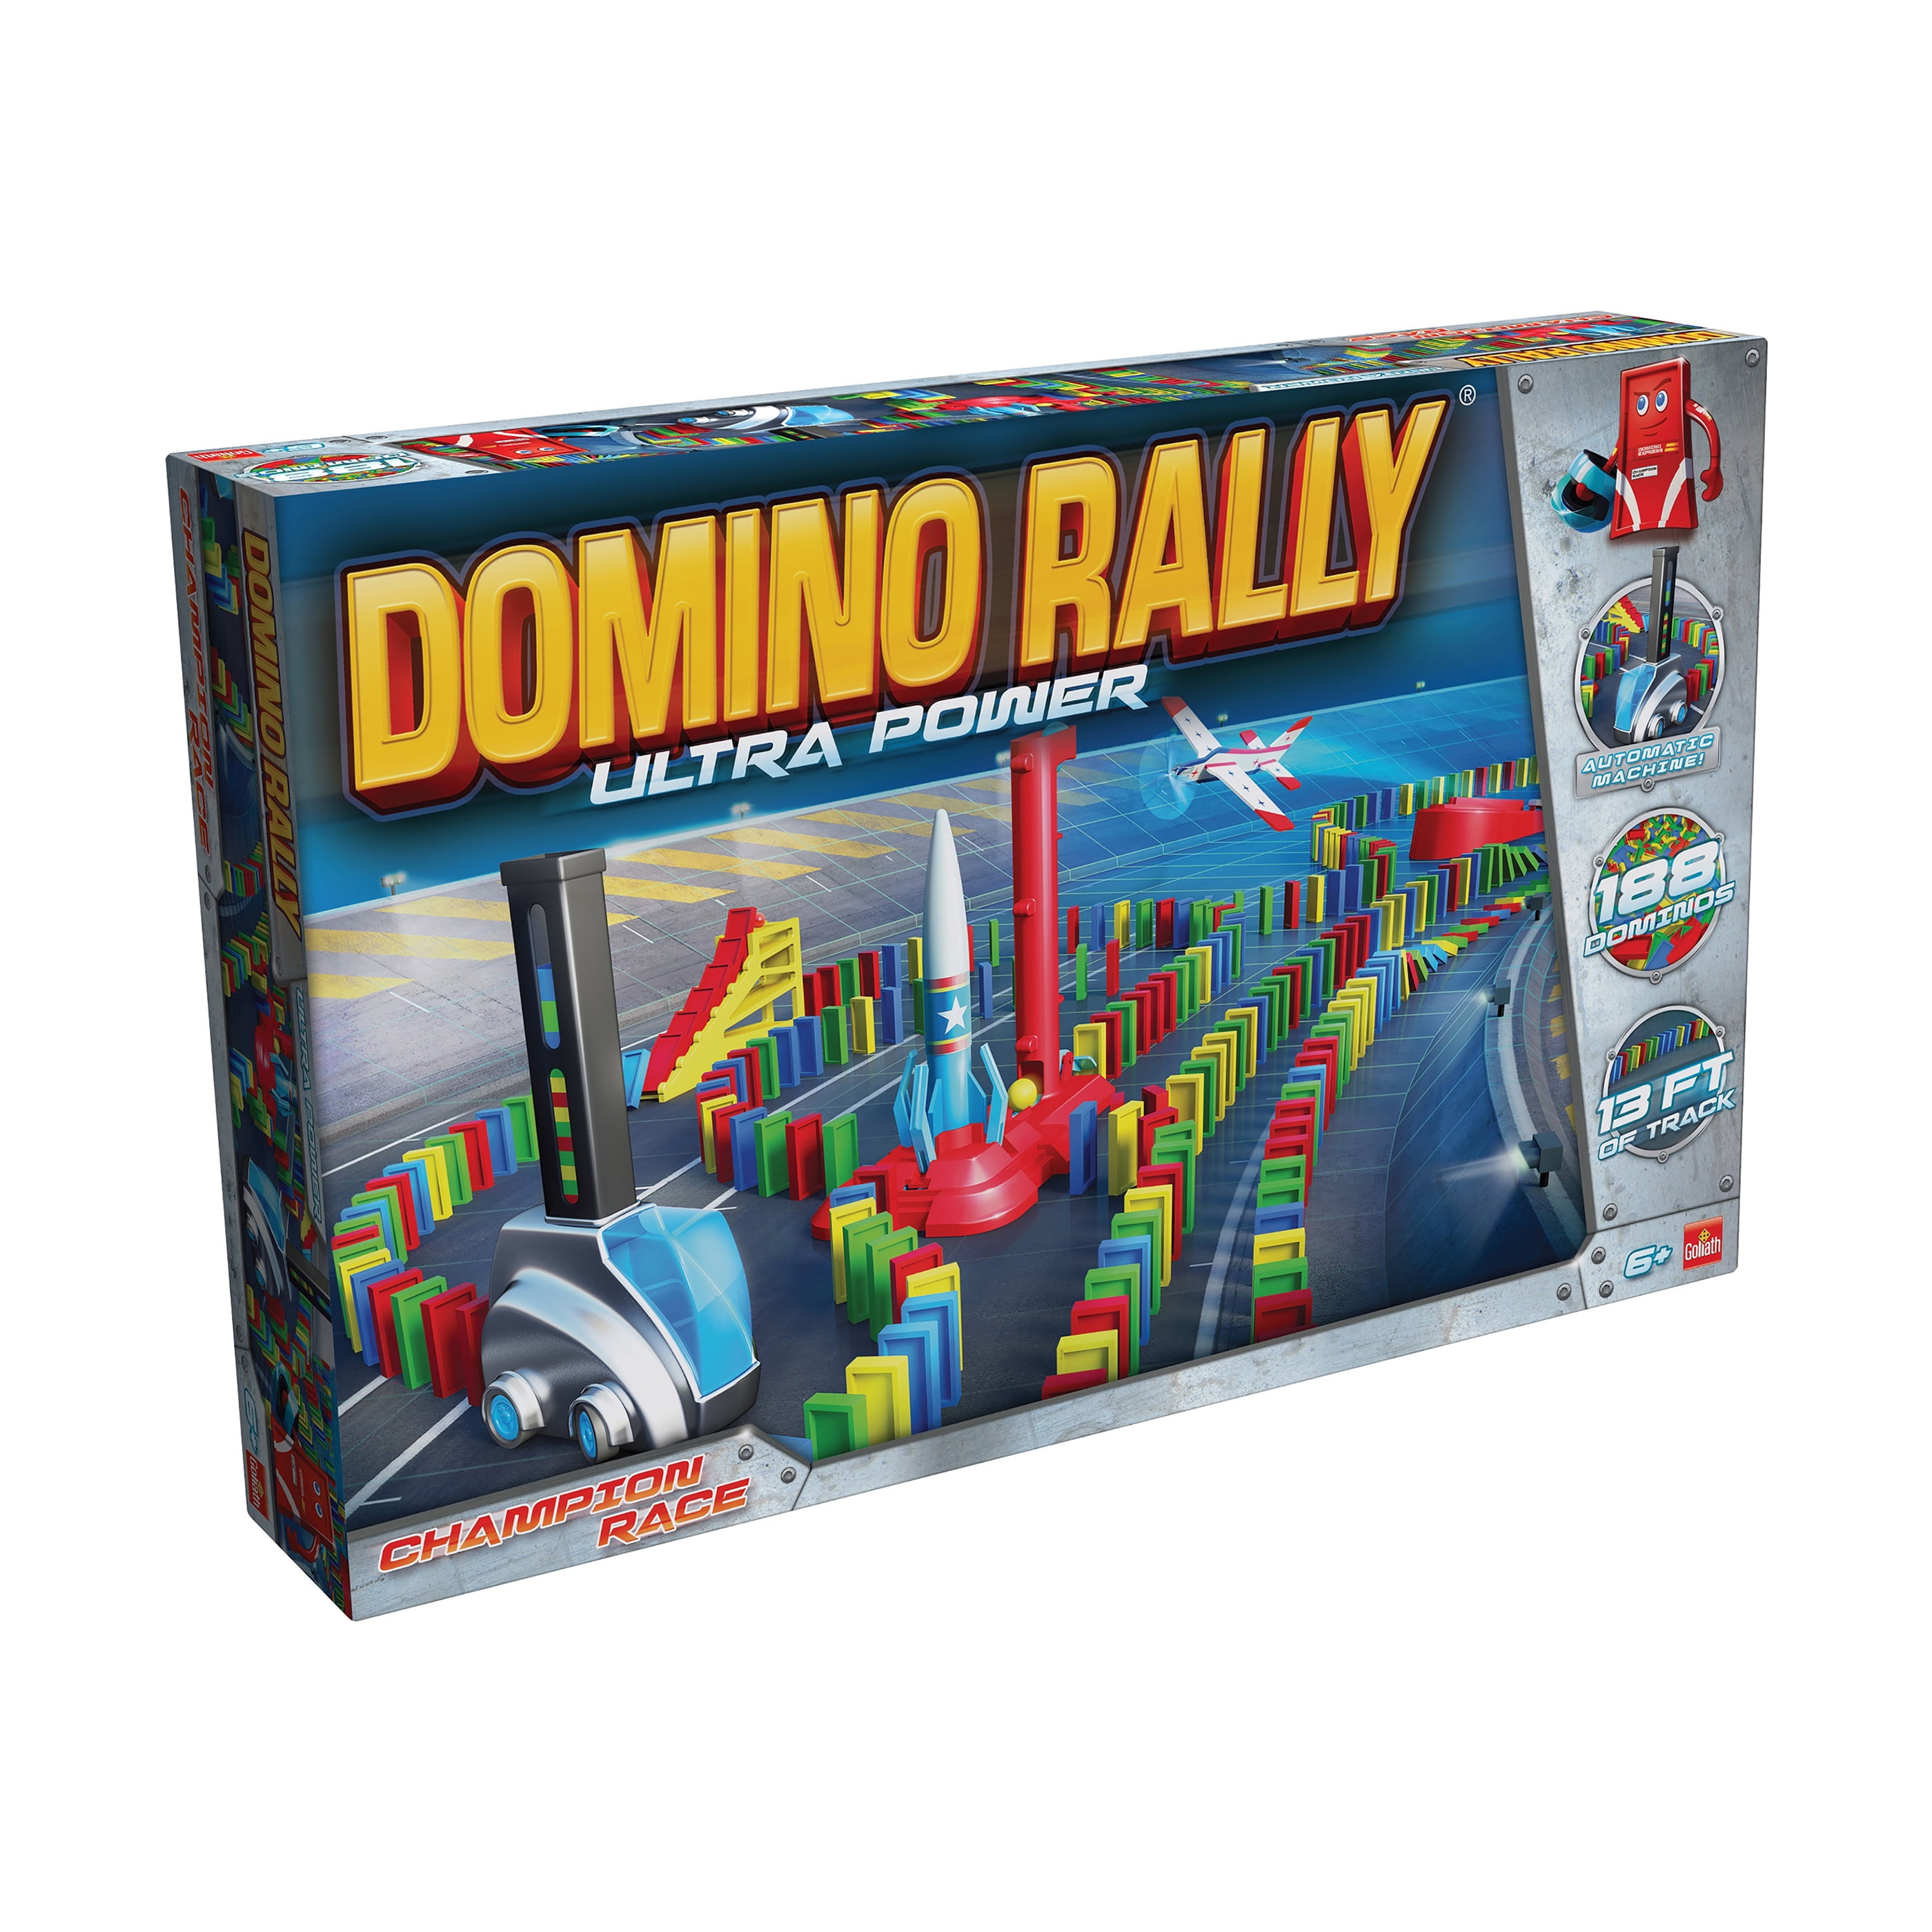 tweede Bemiddelaar gebruik Goliath Domino Rally Ultra Power - Dominoes For Kids - Stem-Based Learning  Set - Walmart.com